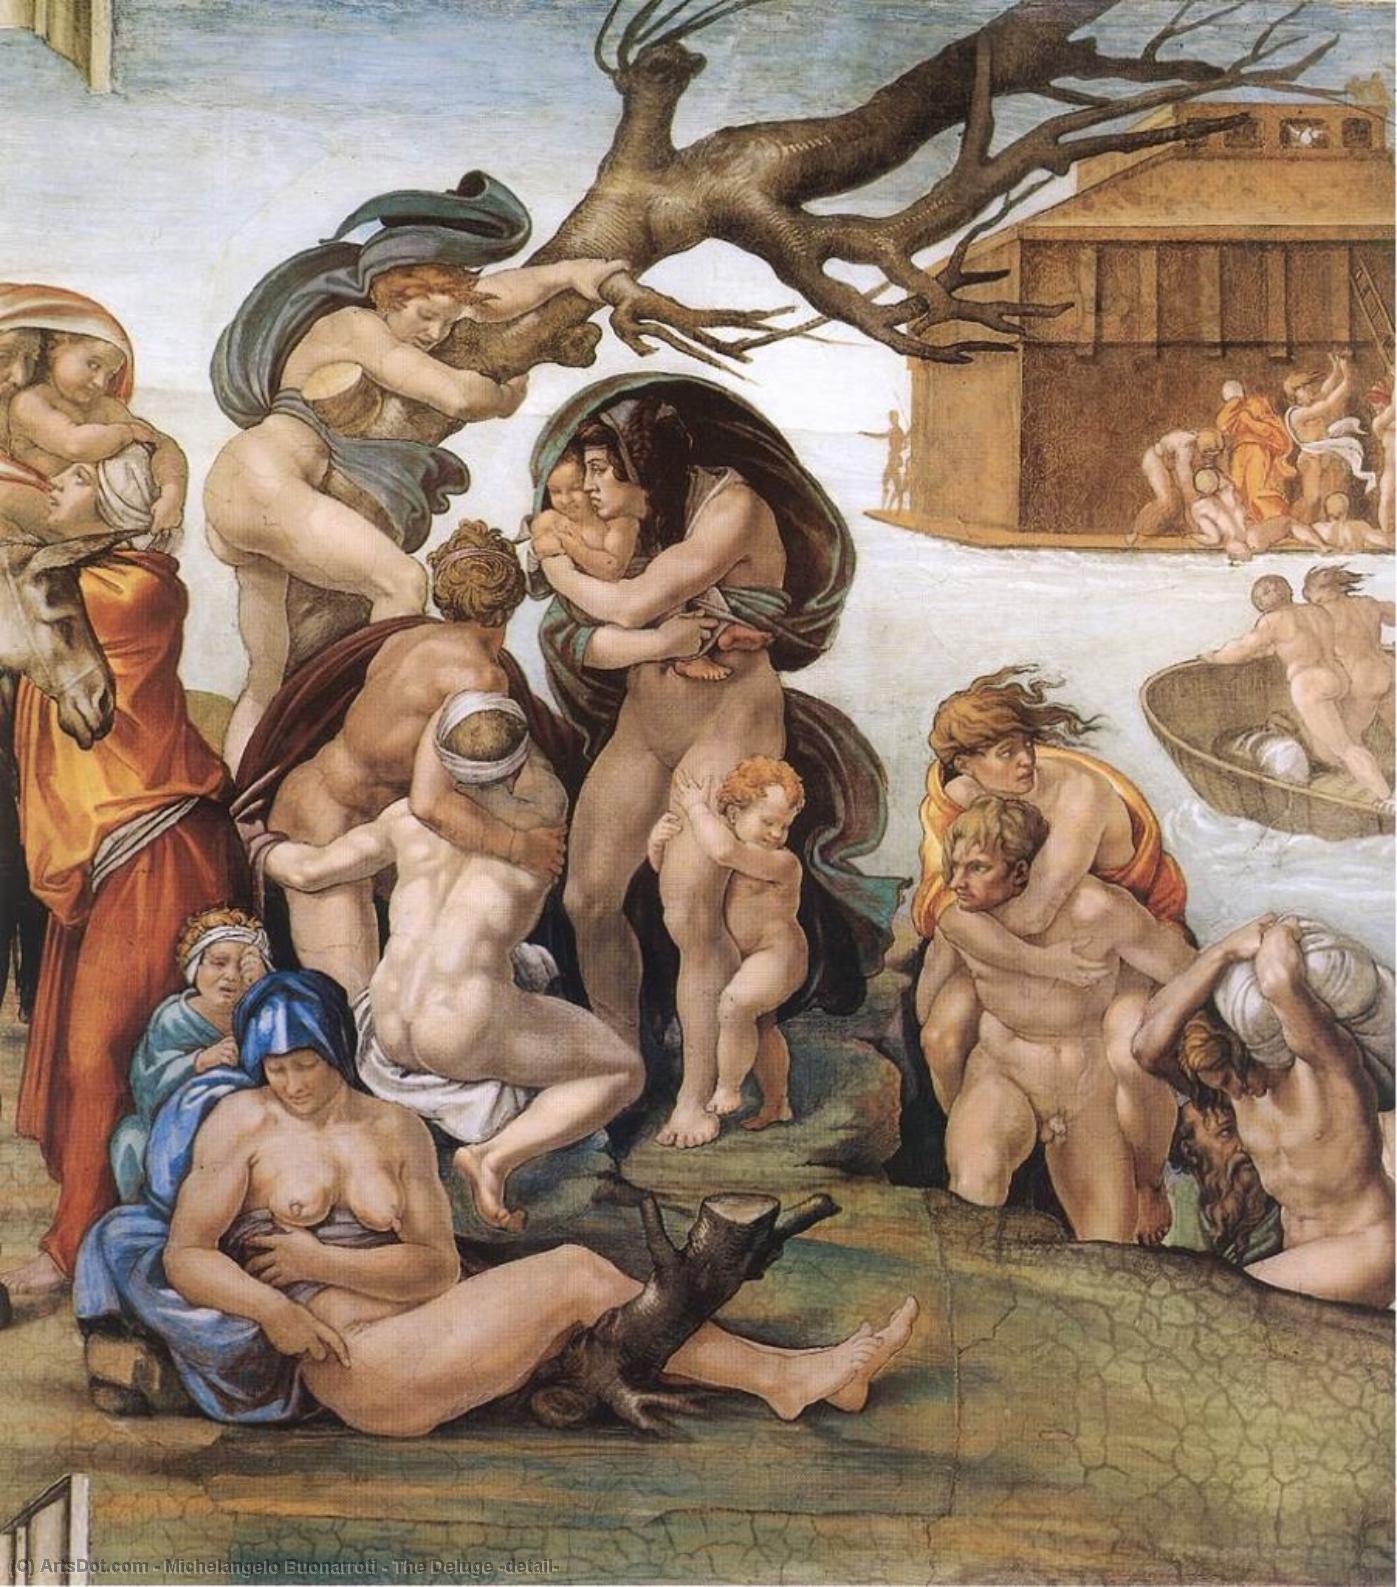 WikiOO.org - Encyclopedia of Fine Arts - Lukisan, Artwork Michelangelo Buonarroti - The Deluge (detail)